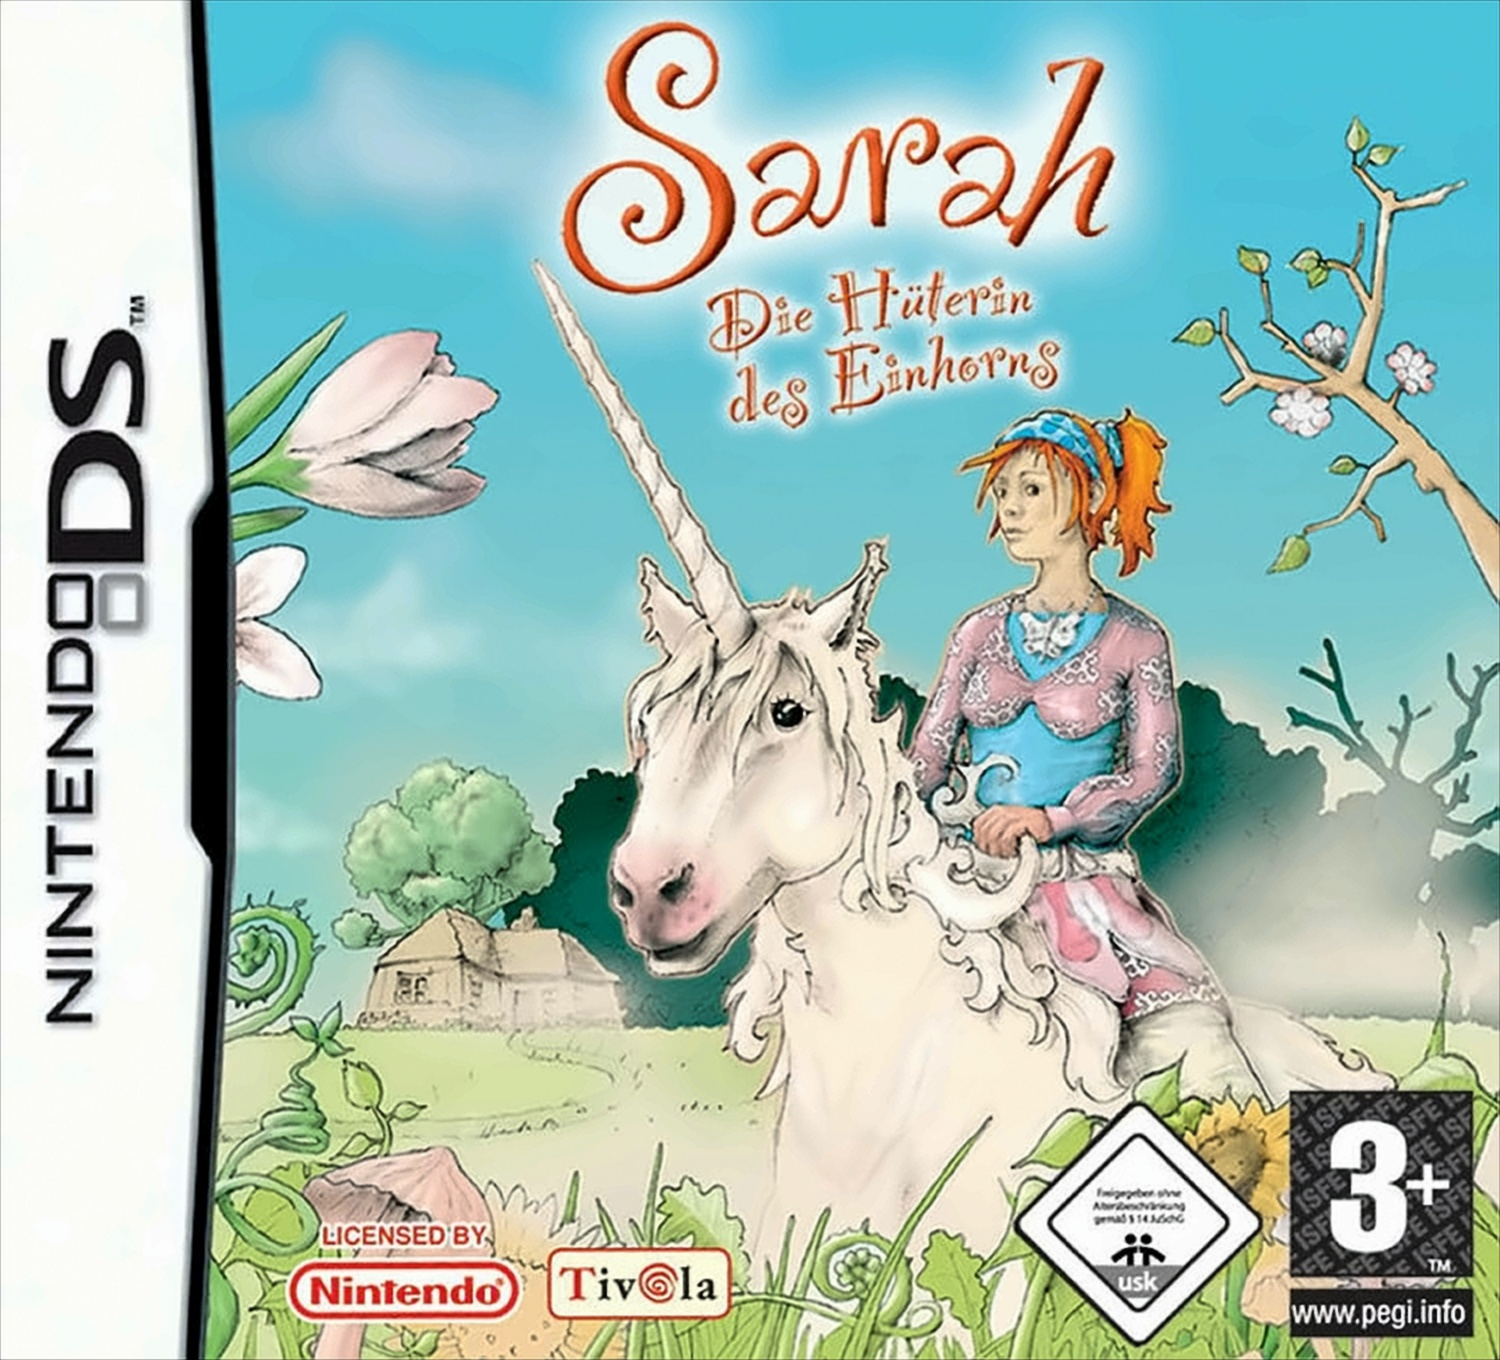 Hüterin DS] des - - [Nintendo Die Sarah Einhorns